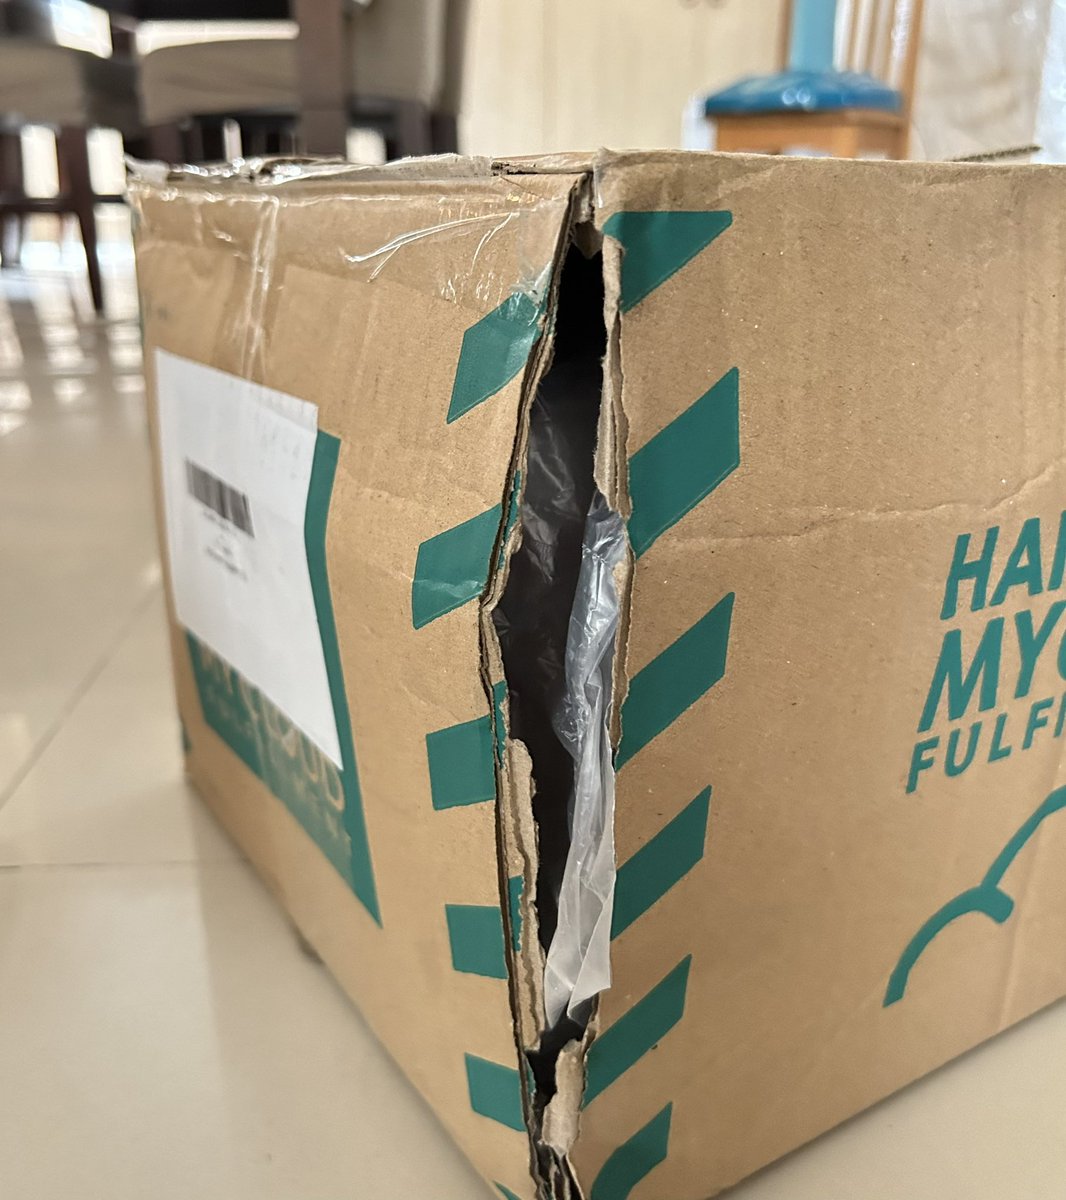 @bbfansign2023 คิดค่าส่งแพงมากแต่สภาพกล่องที่ใส่มานั้นกล่องยุบกล่องขาดมาเลยอ่ะ 👎🏻😡😤
#SourandSweetFanSigninThailand